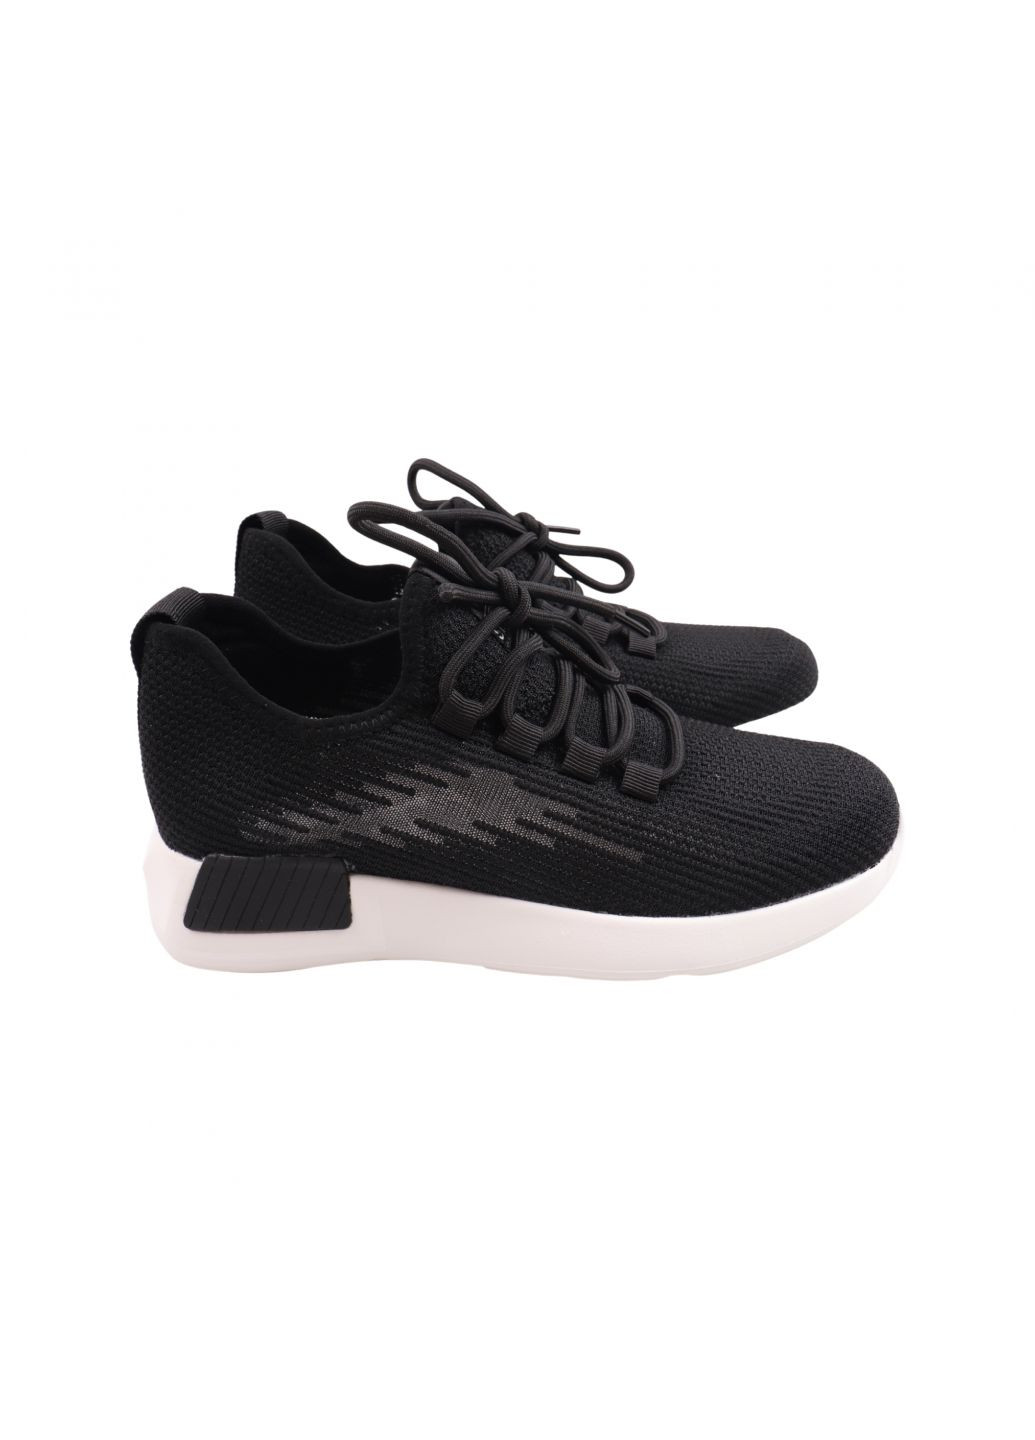 Чорні кросівки жіночі чорні текстиль Berisstini 141-23LK